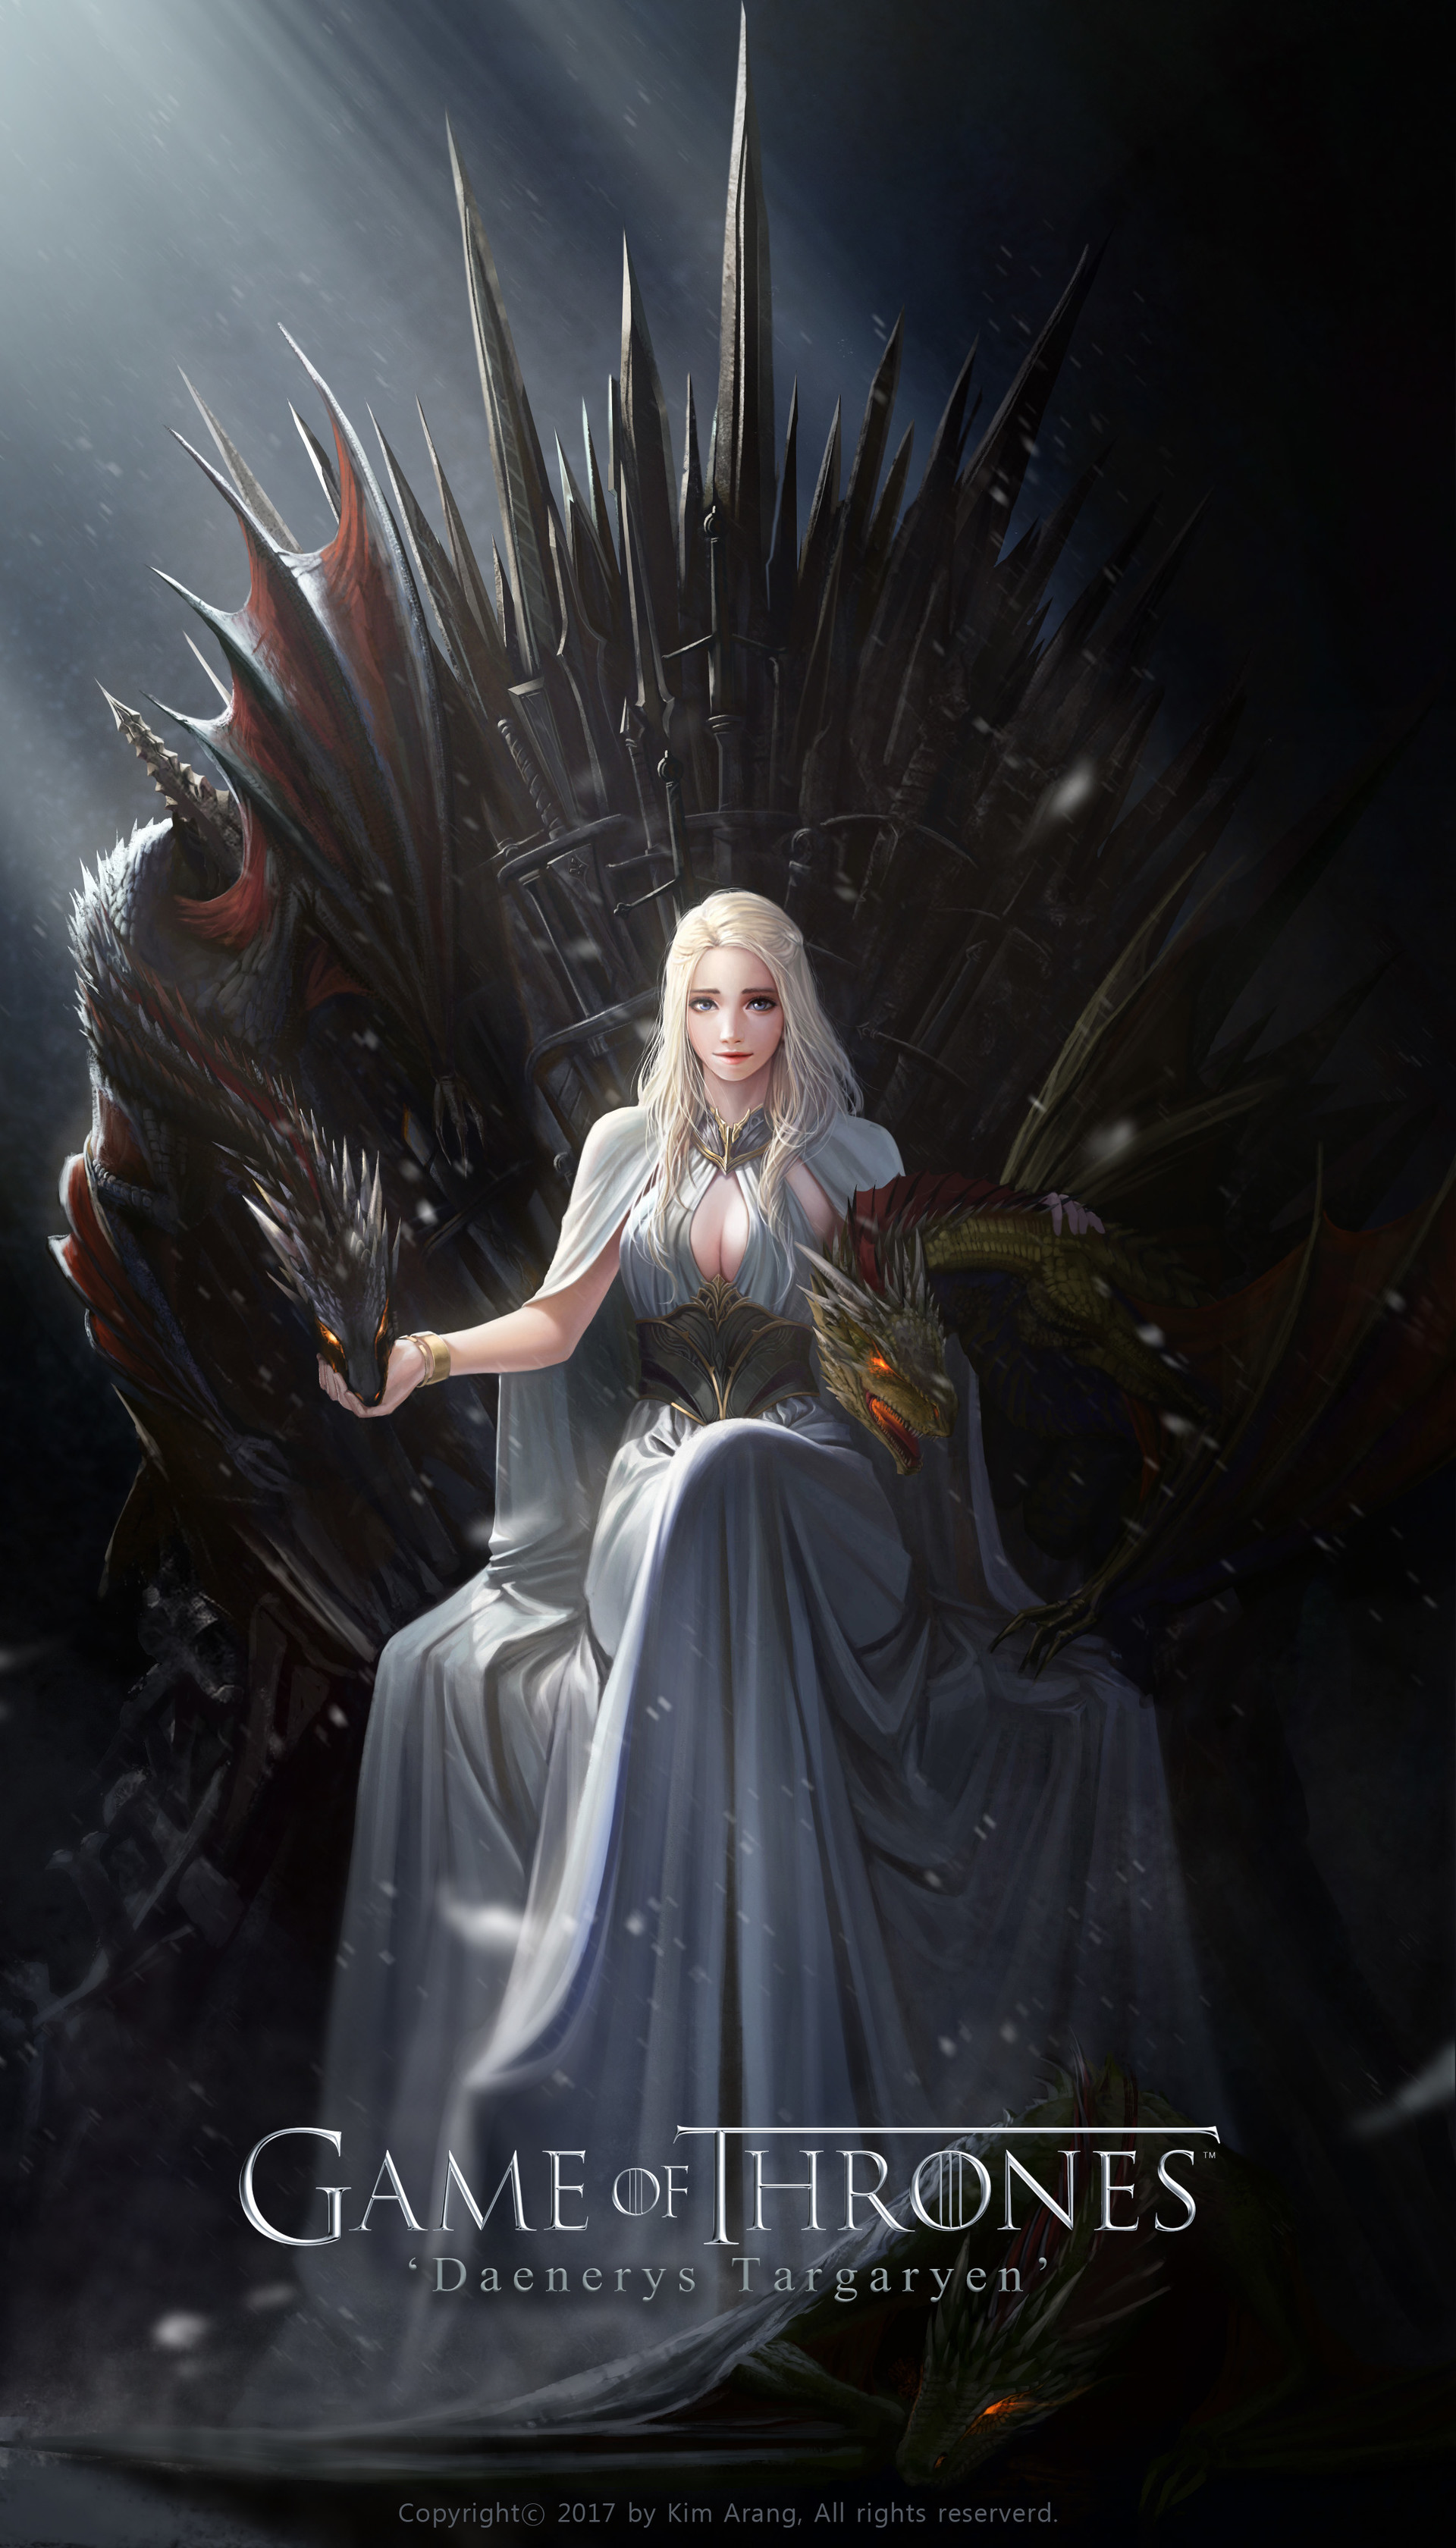 GAME OF THRONES SEASON 8 Daenerys Targaryen W/ WINGS FAN ART PUBLICITY PHOTO 